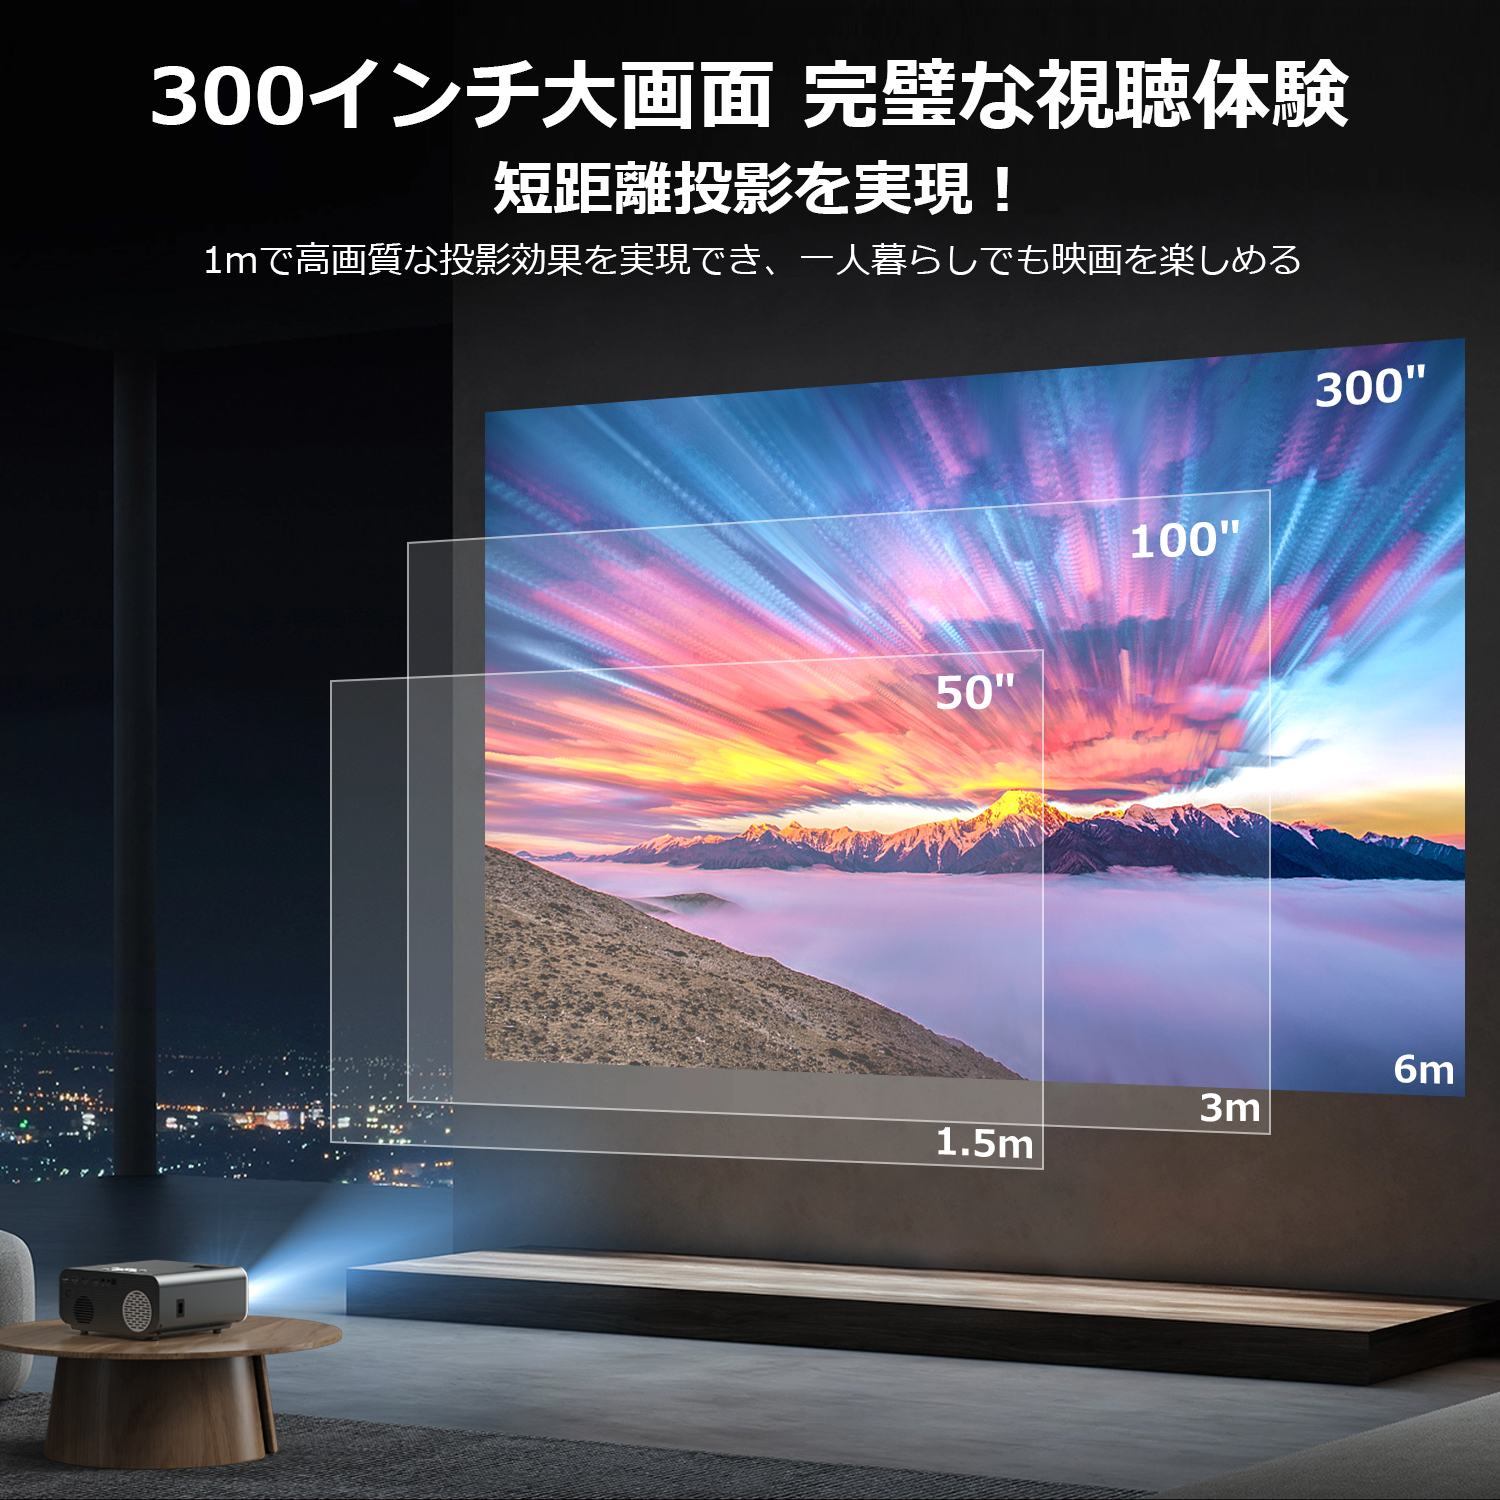  Mini штатив есть *ASUTAS проектор маленький размер 20000lm 5GWIFI 4K 1080P разрешение Bluetooth5.2 шт. форма корректировка zoom функция потолок .. для бытового использования 300" большой экран HIFI динамик низкий задержка 